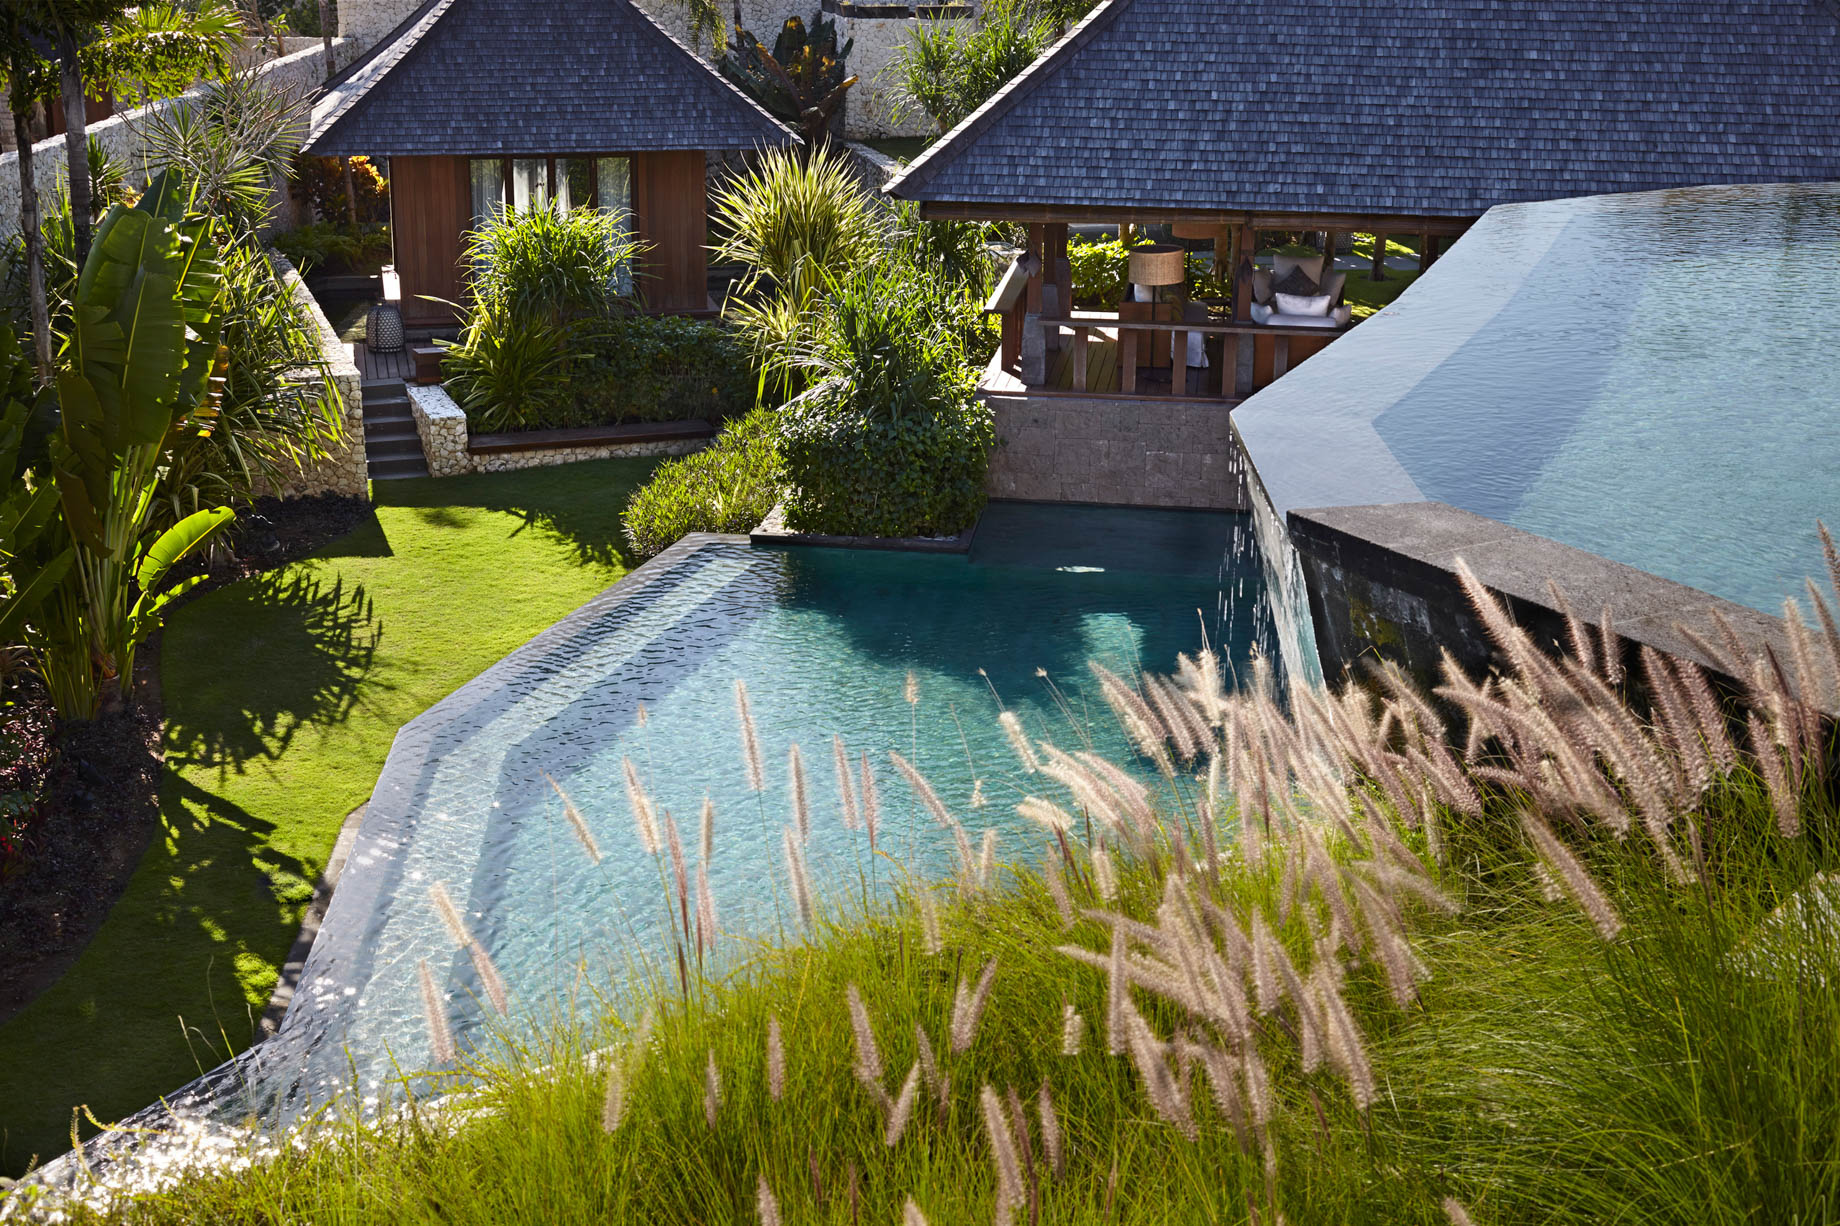 Bvlgari Resort Bali – Uluwatu, Bali, Indonesia – The Mansions Courtyard and Pool Area